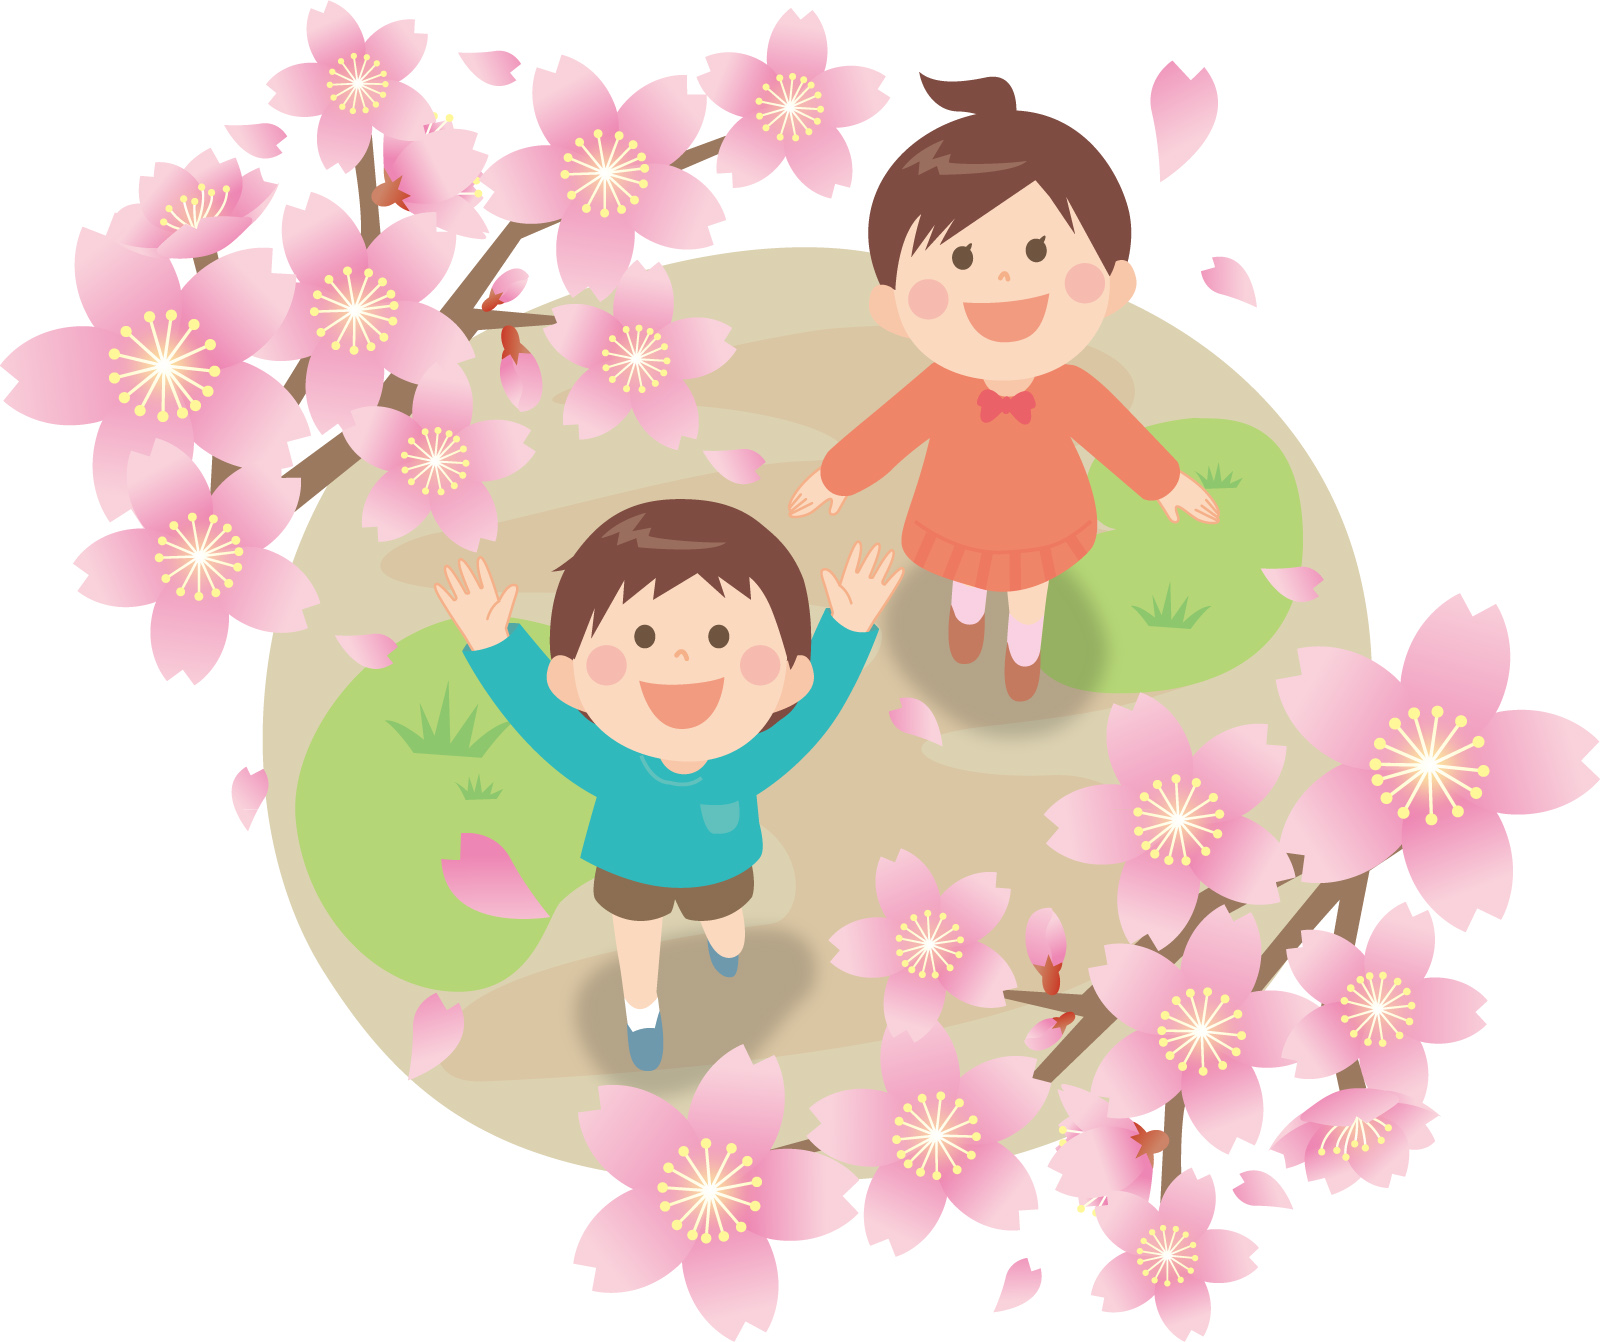 【3/13追記。中止になりました】〈4/12〉道の駅しんあさひ風車村にて、家族で楽しめる『さくら祭り』が開催されます